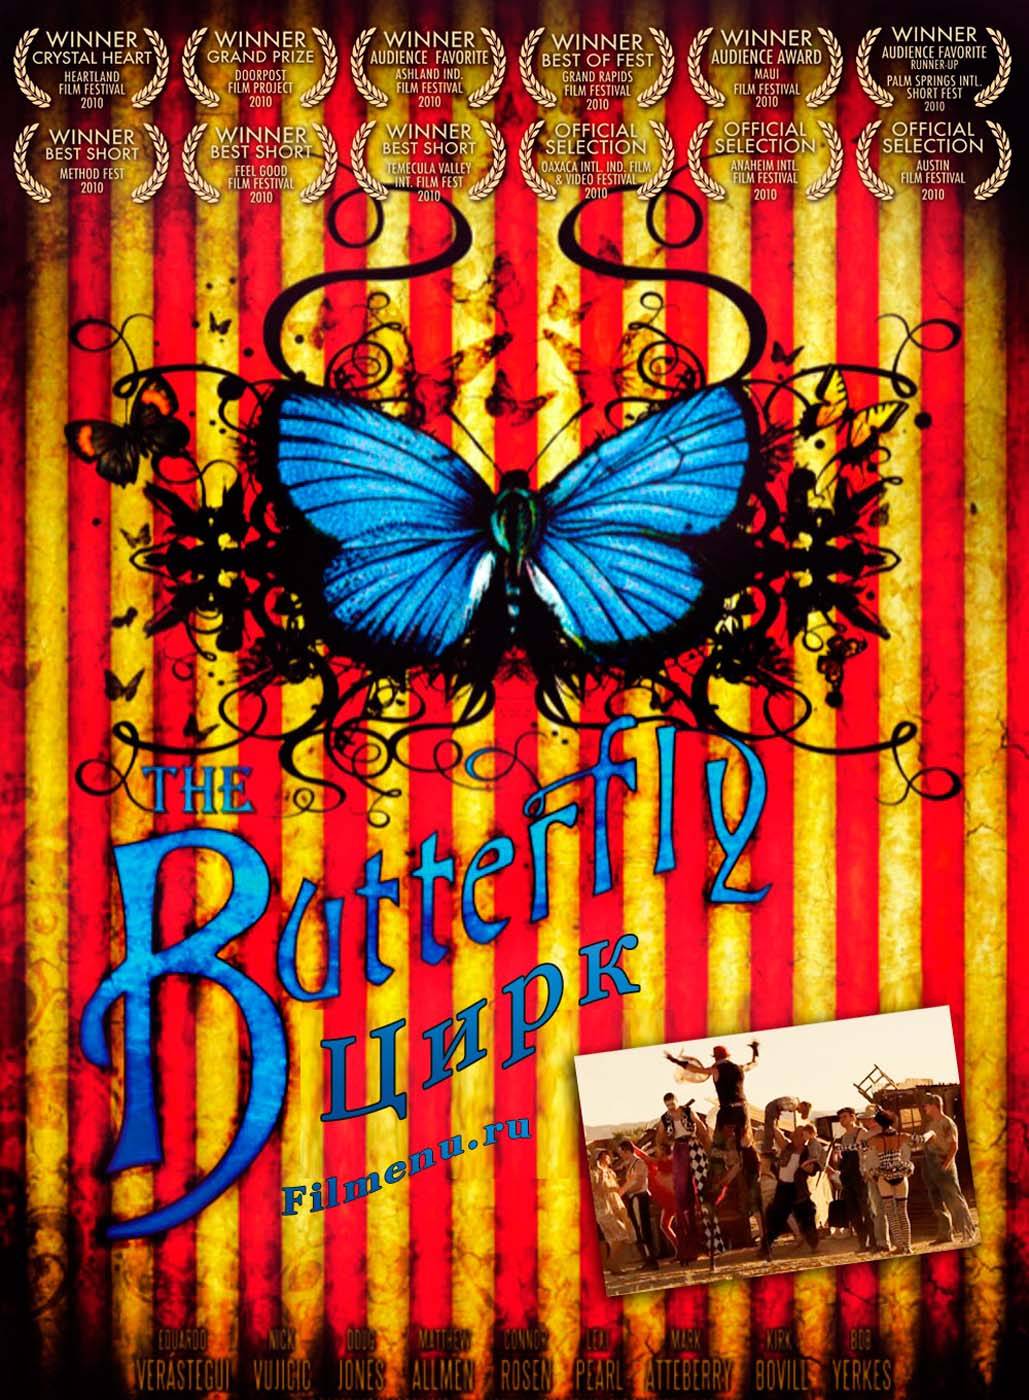 Цирк "Бабочка" / The Butterfly Circus (2009) отзывы. Рецензии. Новости кино. Актеры фильма Цирк "Бабочка". Отзывы о фильме Цирк "Бабочка"